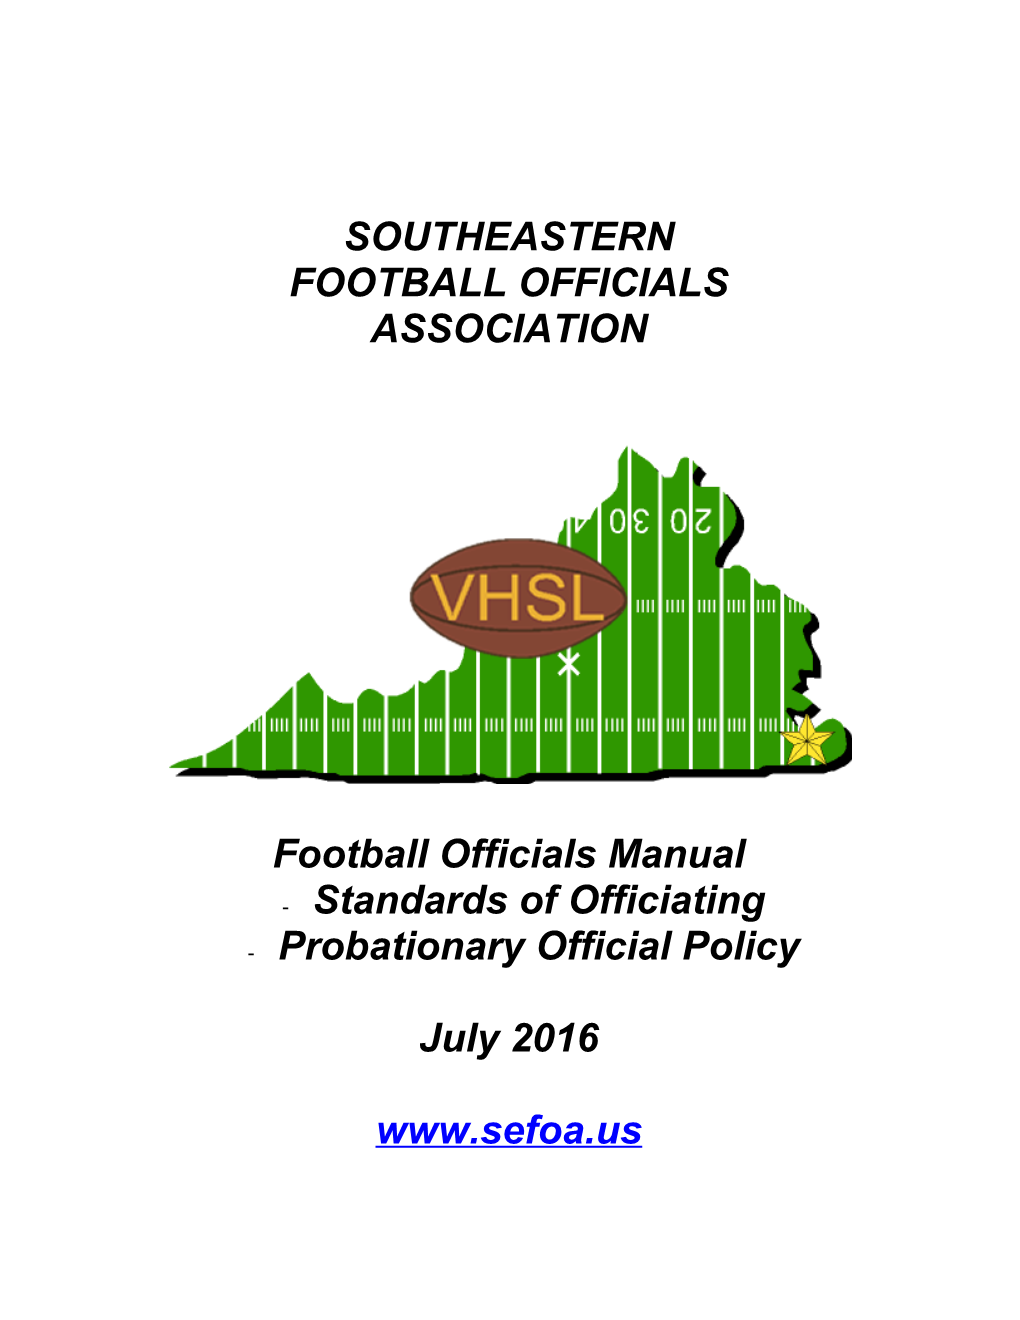 Southeastern Football Officials Association